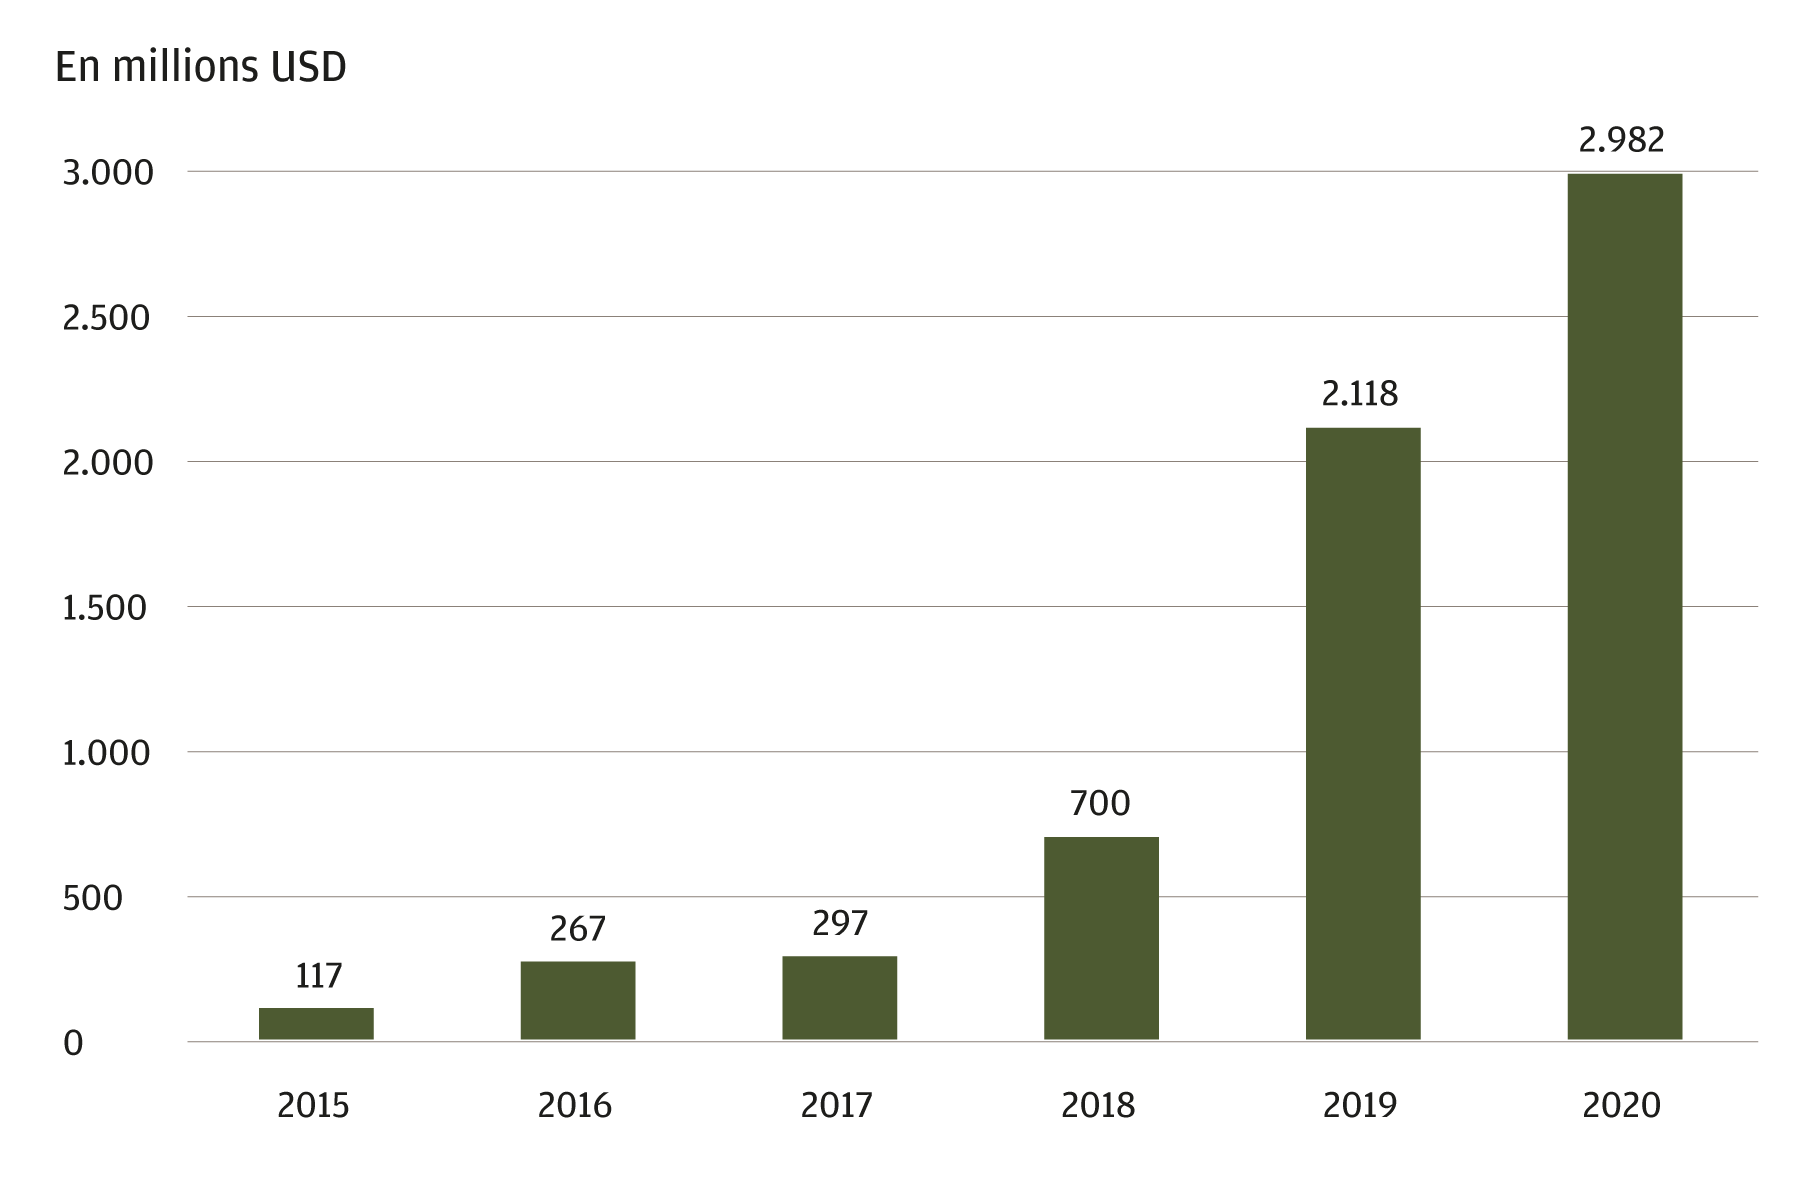 Ce graphique illustre le financement annuel de la fintech en Amérique latine de 2015 à 2020, en millions de dollars américains. Le financement de la fintech a augmenté chaque année depuis 2015. En 2015, le montant des ces financements s'élevait à 117 millions USD. L'année la plus récente figurant sur le graphique est 2020, avec 2,982 milliards USD de financements en faveur de la fintech.